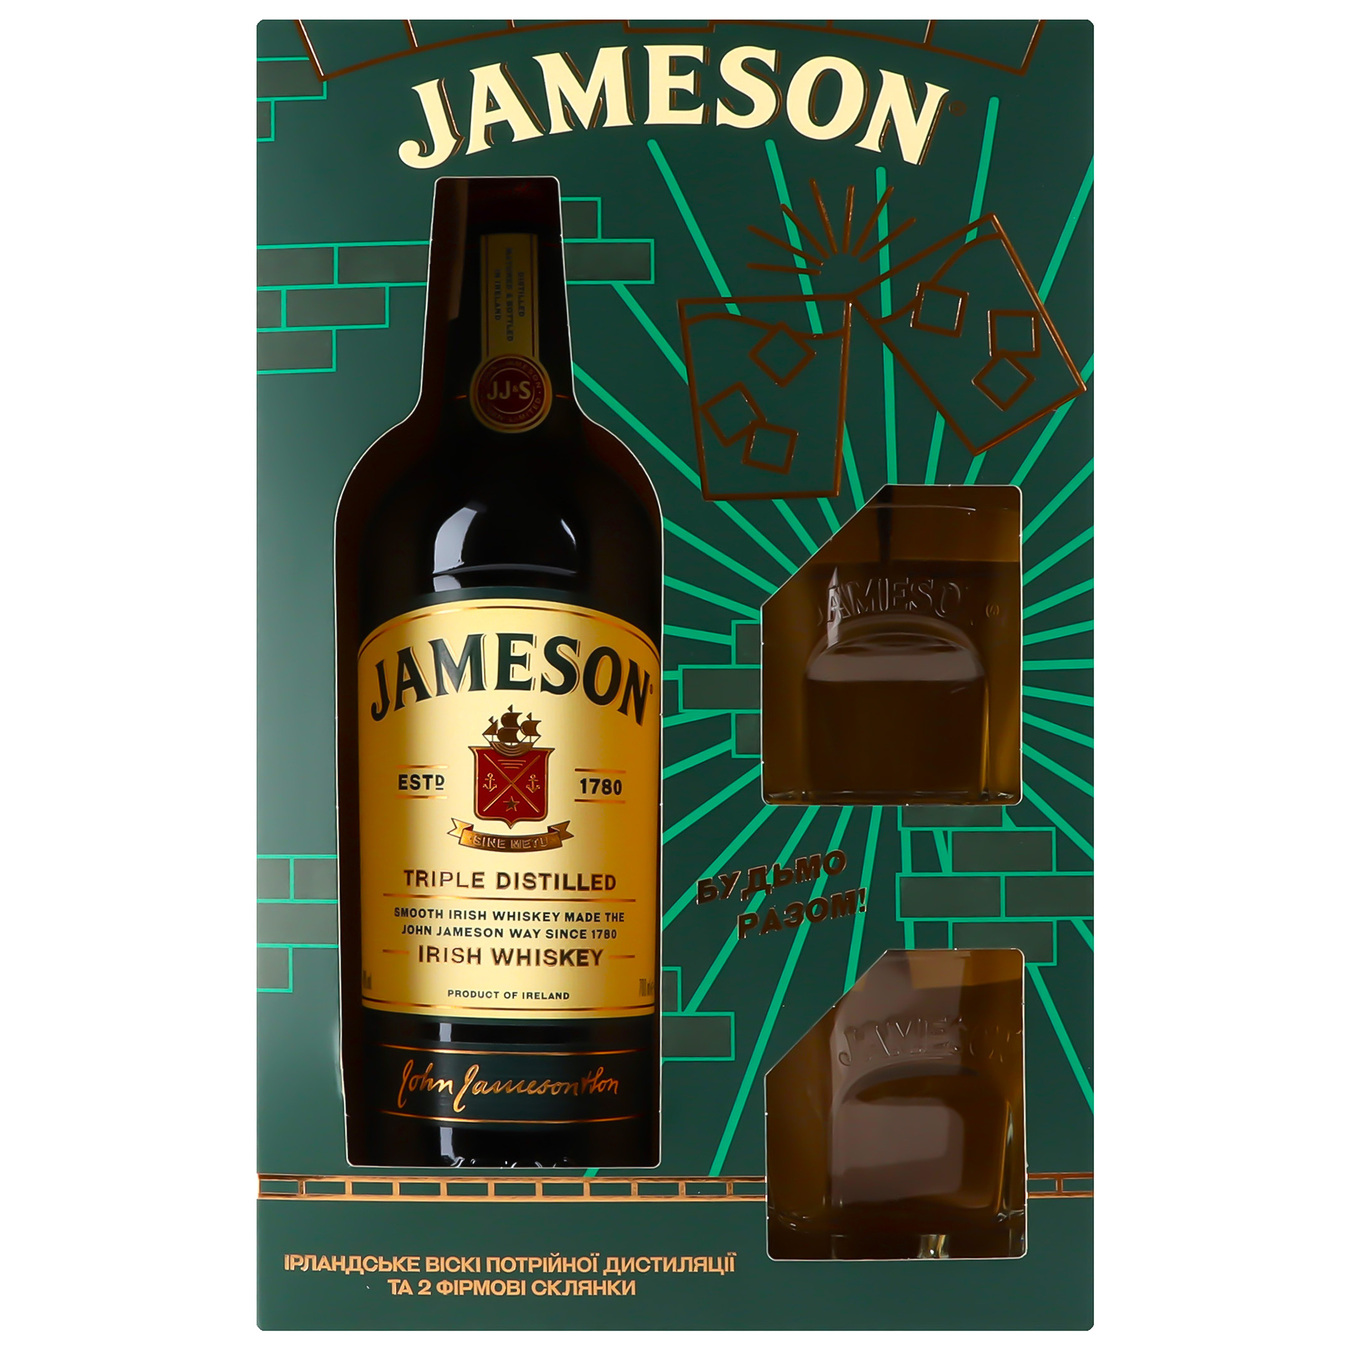 Jameson whiskey 40% 0.7l + 2 glasses